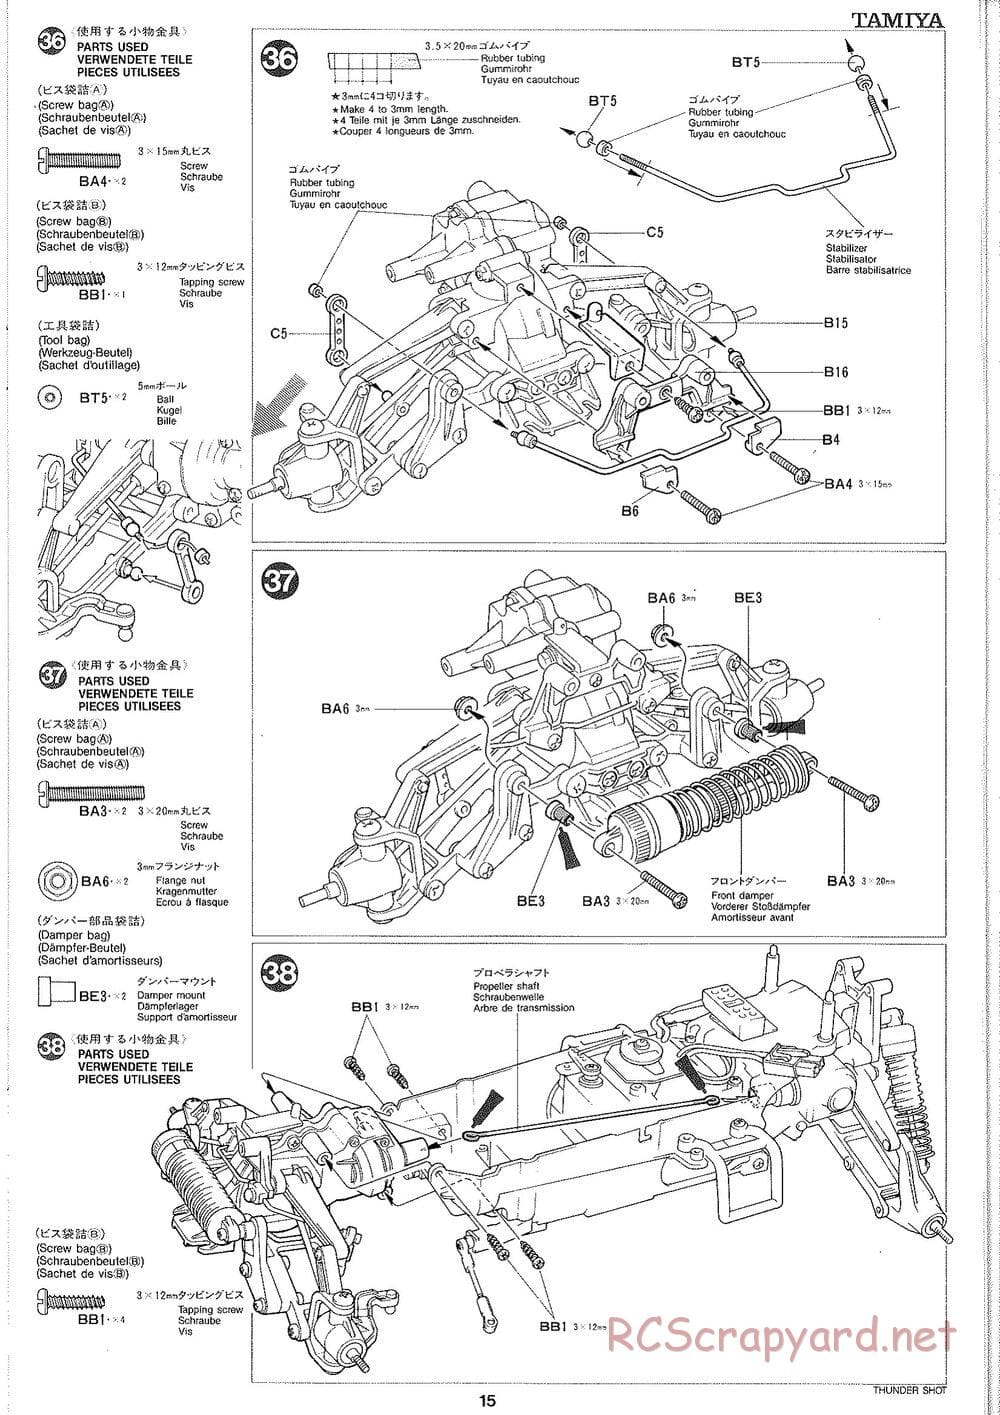 Tamiya - Thunder Shot - TS1 Chassis - Manual - Page 16